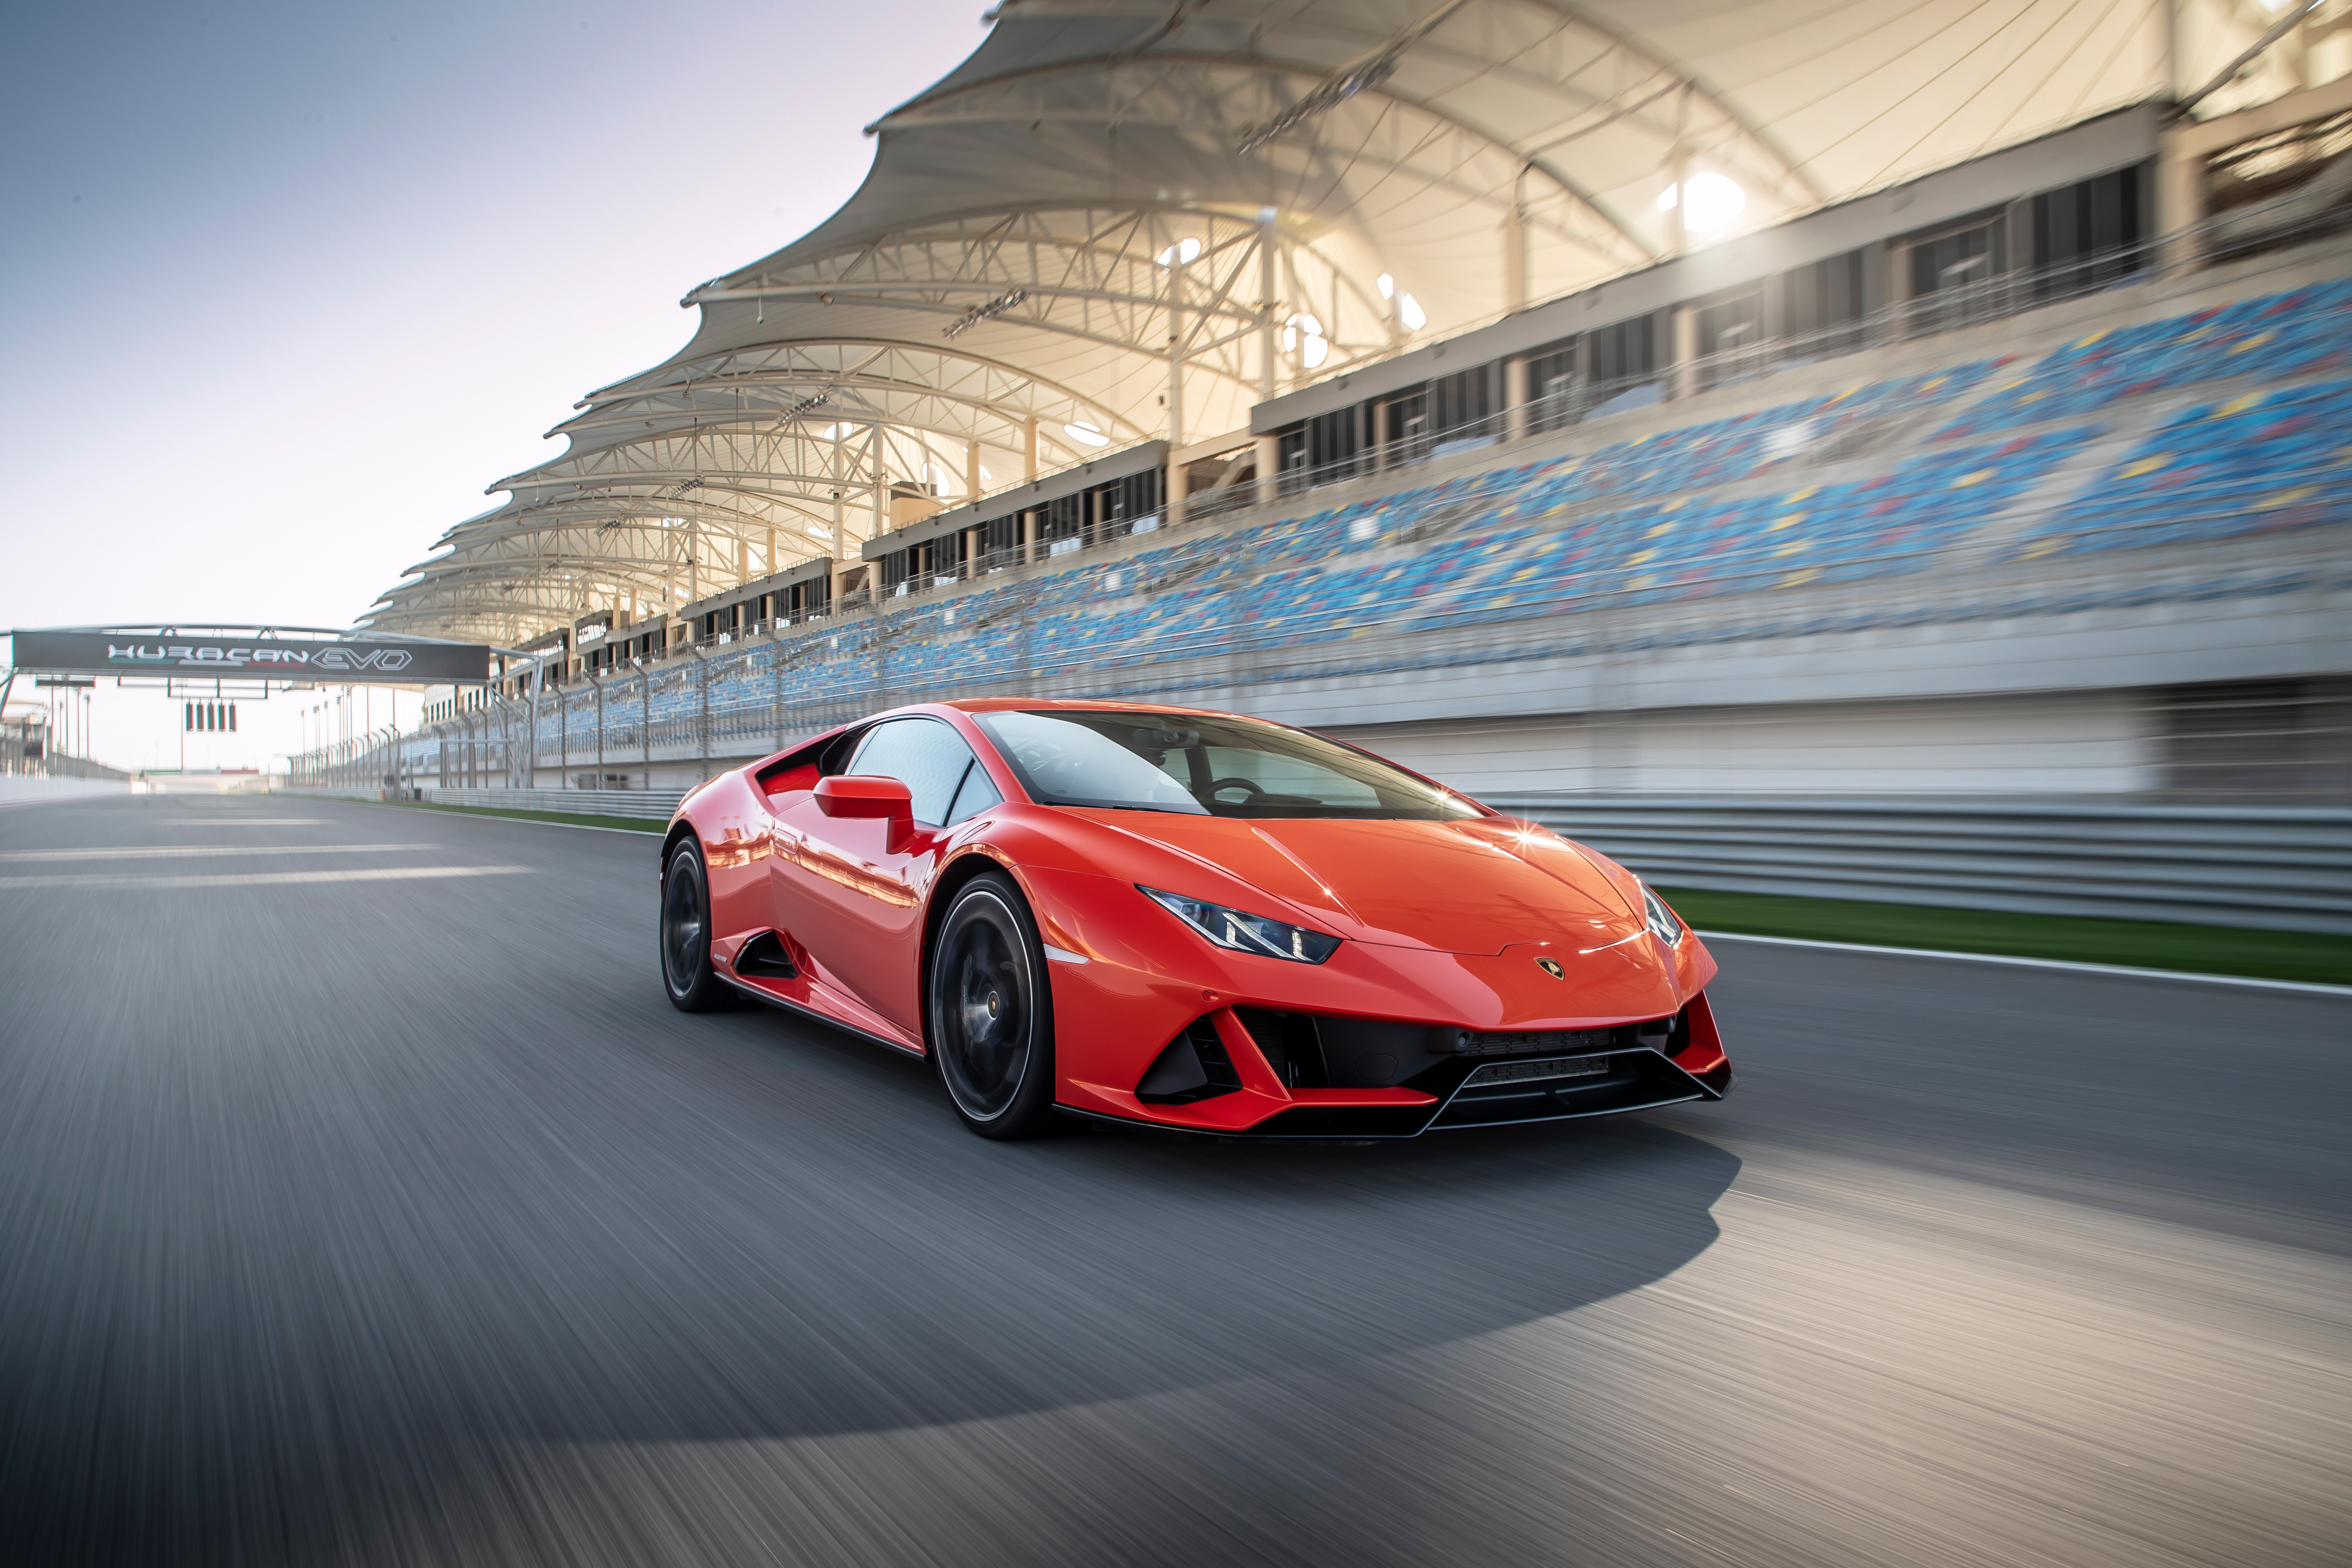 2019 Lamborghini Huracan EVO 4k, HD Cars, 4k Wallpapers, Images